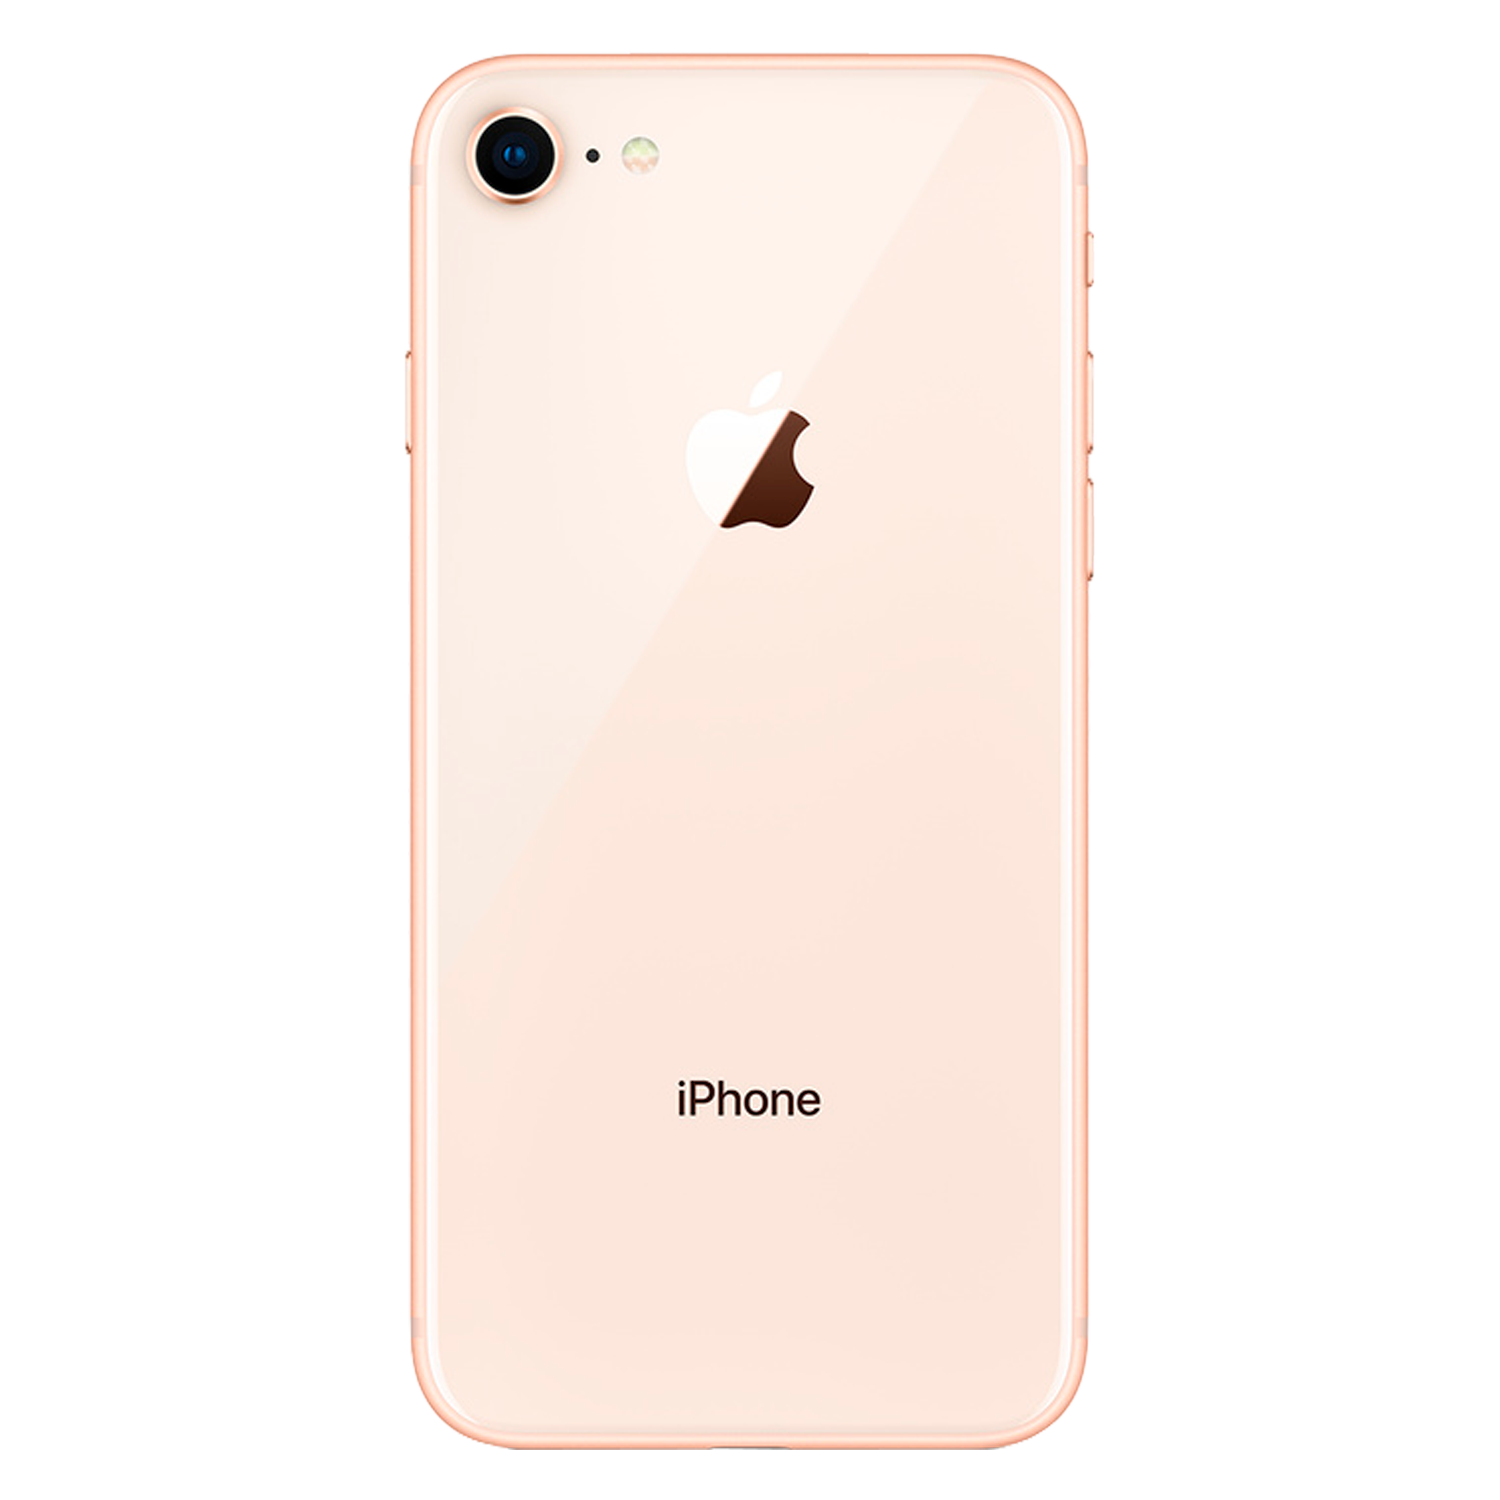 Celular Apple iPhone 8 A1905/1863/1906 64GB / 2GB RAM / 4G LTE / Tela 4.7" / Câmeras 12mp e 7mp - Gold (Só Aparelho / Swap A)